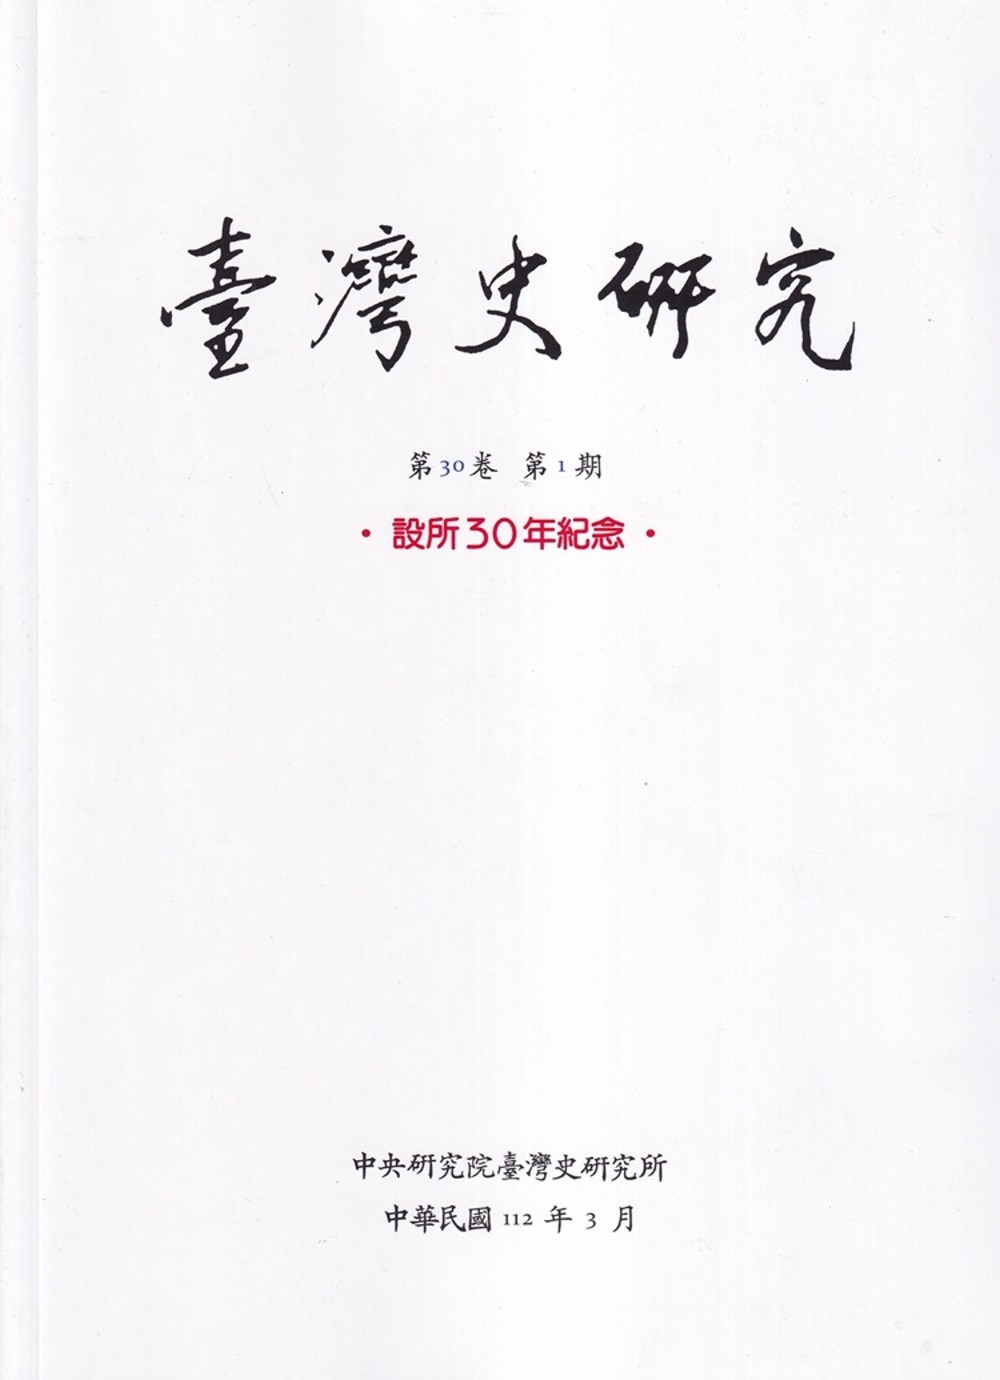 臺灣史研究第30卷1期(112.03)：設所30年紀念